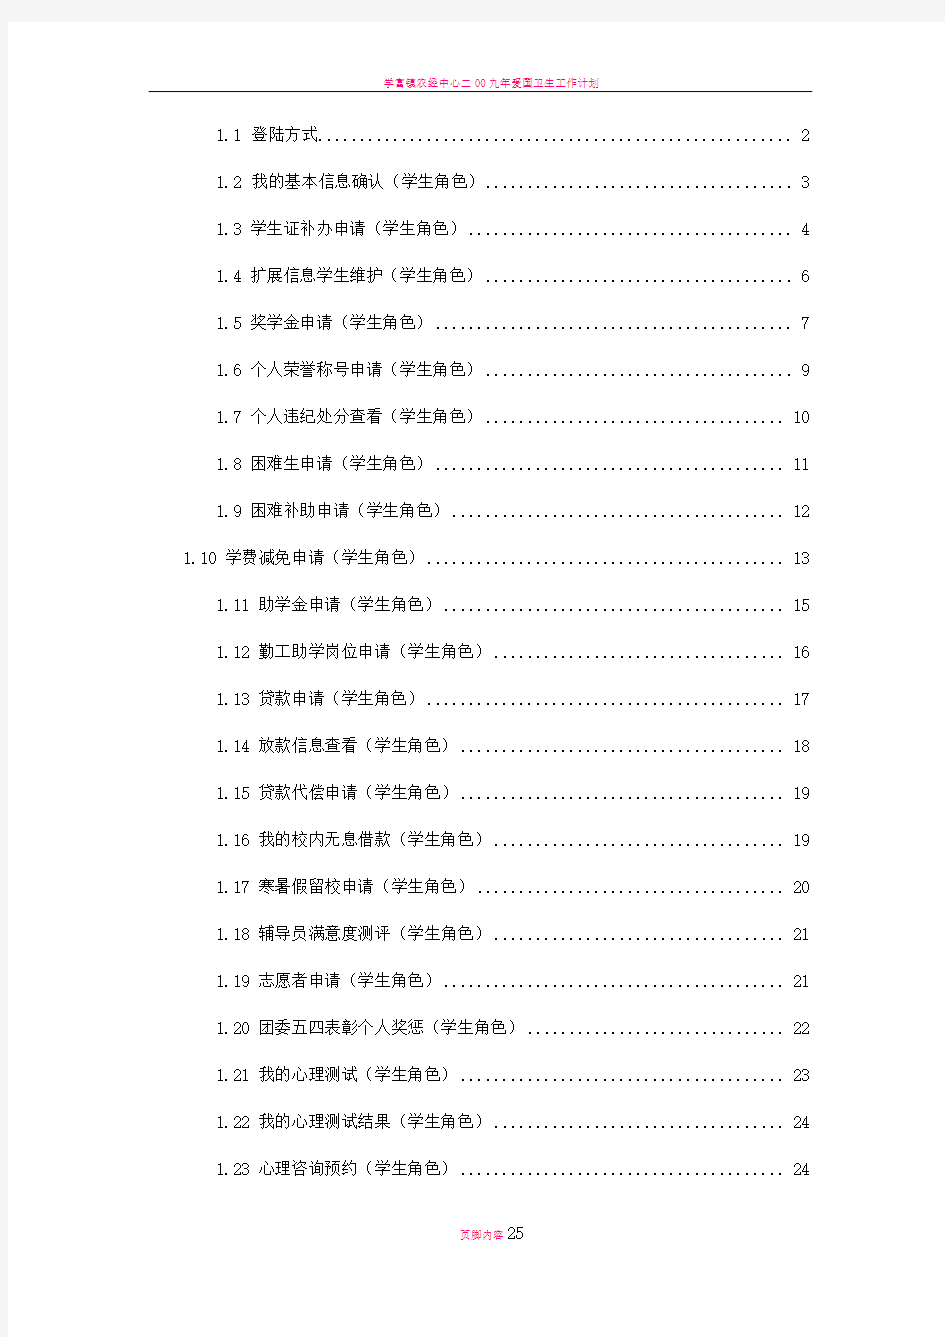 学工管理系统操作手册(学生角色)武汉理工大学